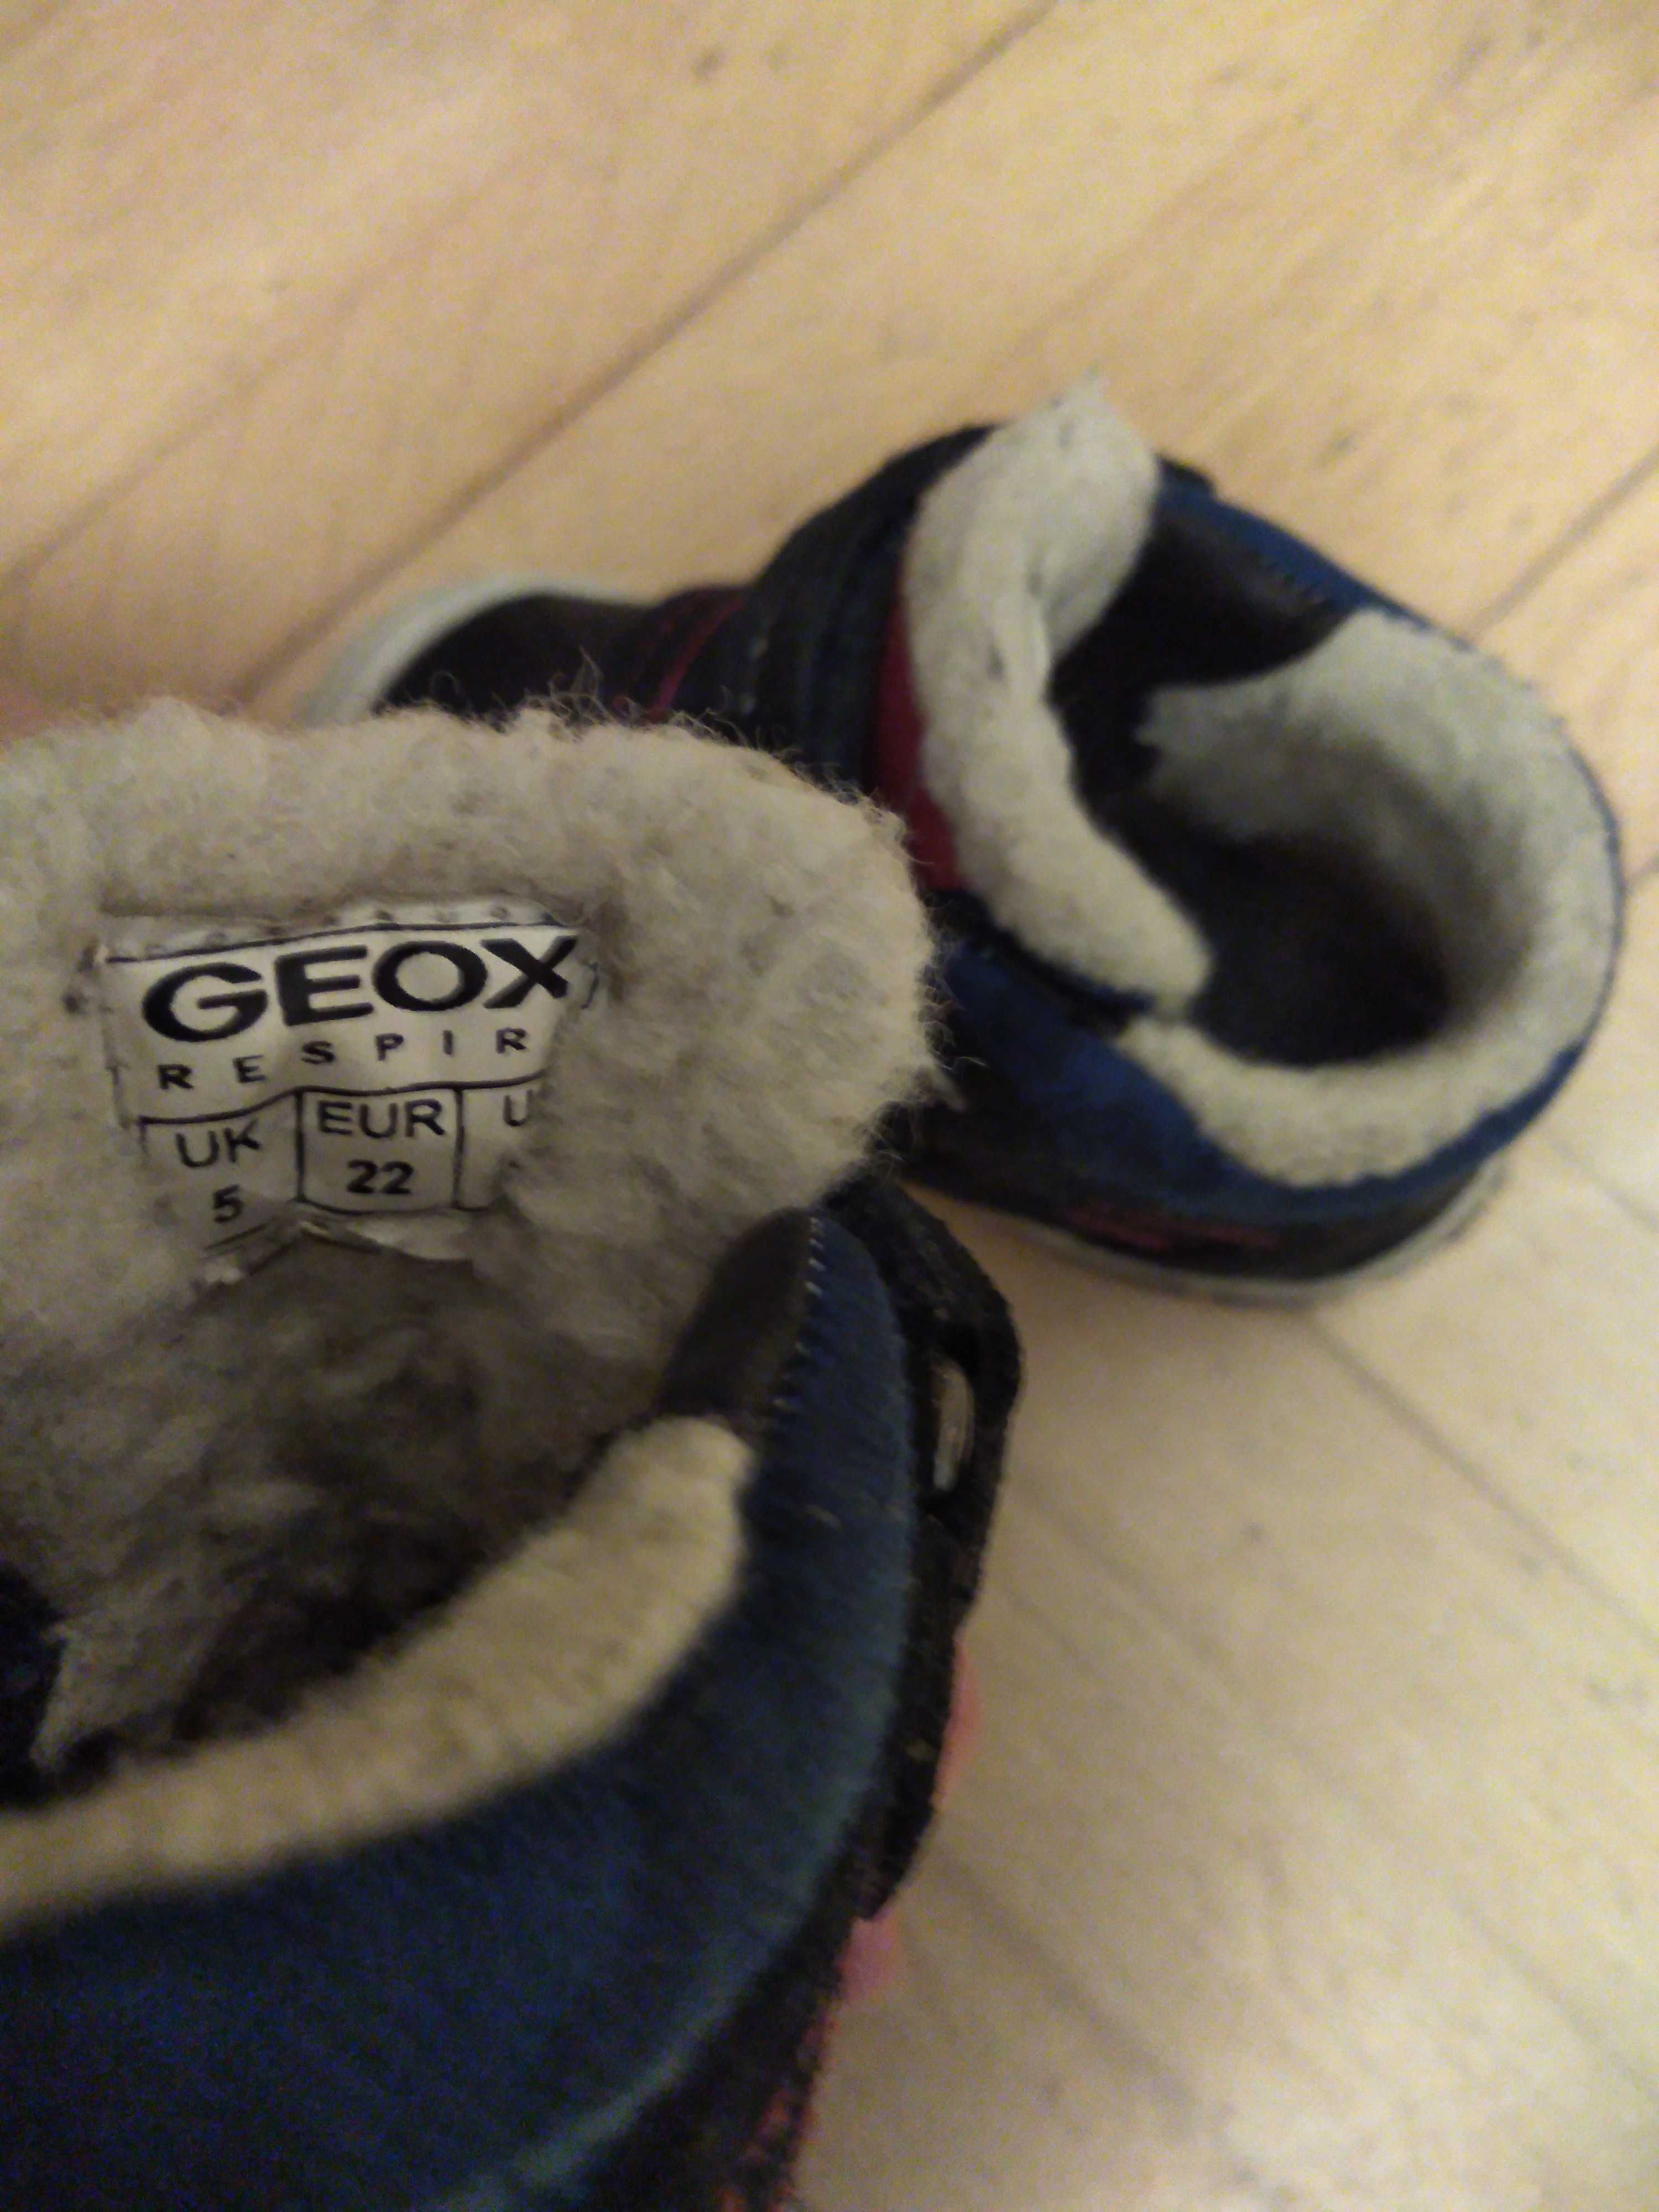 buty zimowe geox oraz śniegowce geox rozmiar 22